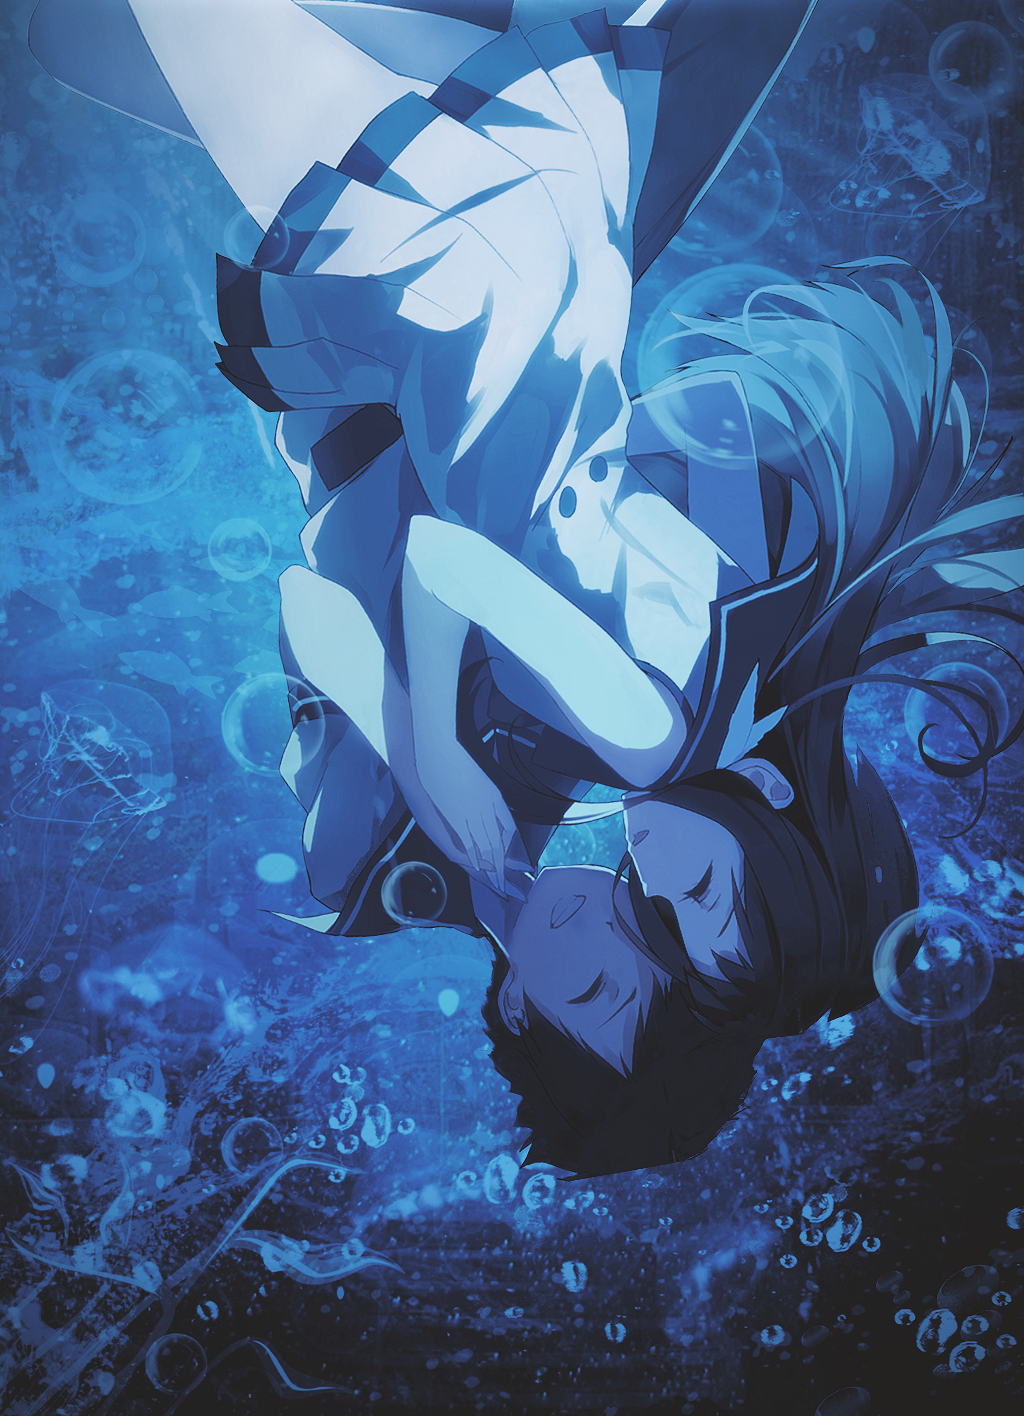 Nagi no Asukara (Nagi-asu: A Lull In The Sea) Image by Ishii